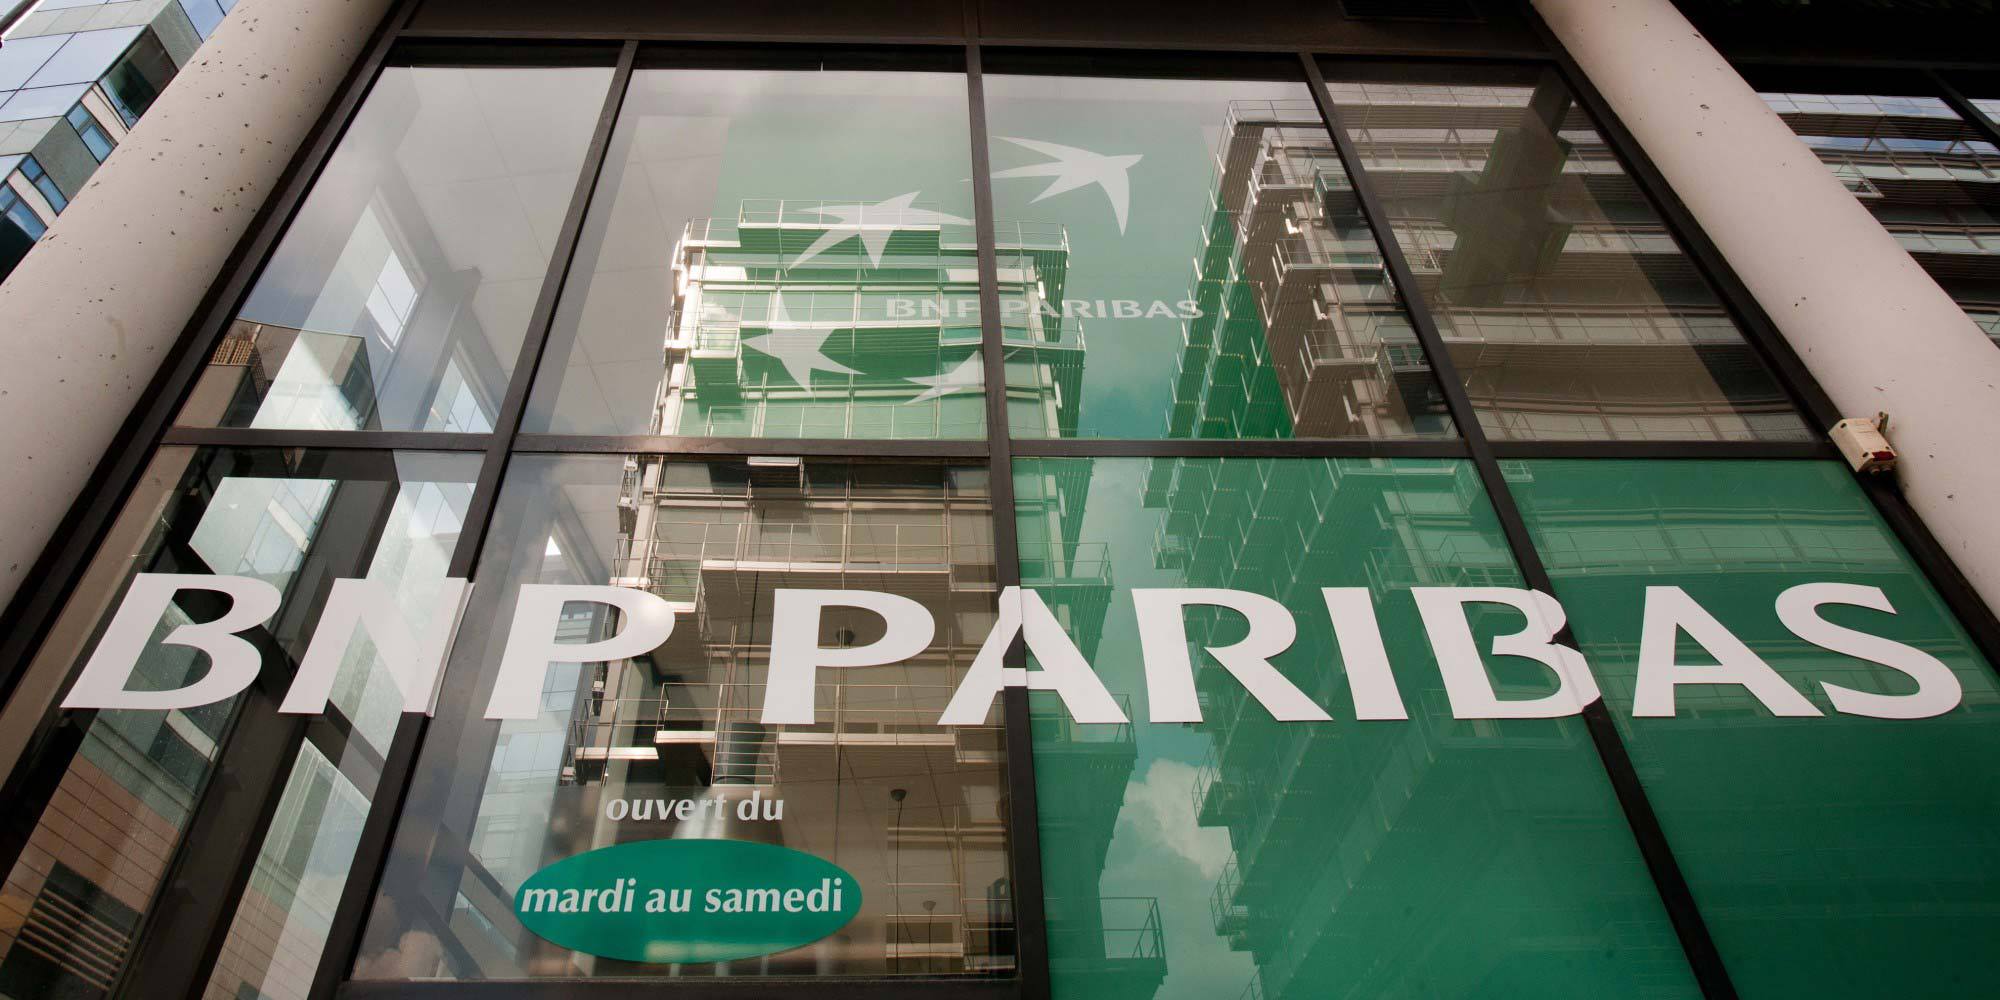 Posibilă tranzacţie gigant în sistemul bancar: BNP Paribas, cea mai mare bancă din Franţa, vrea să cumpere gigantul olandez ABN Amro 